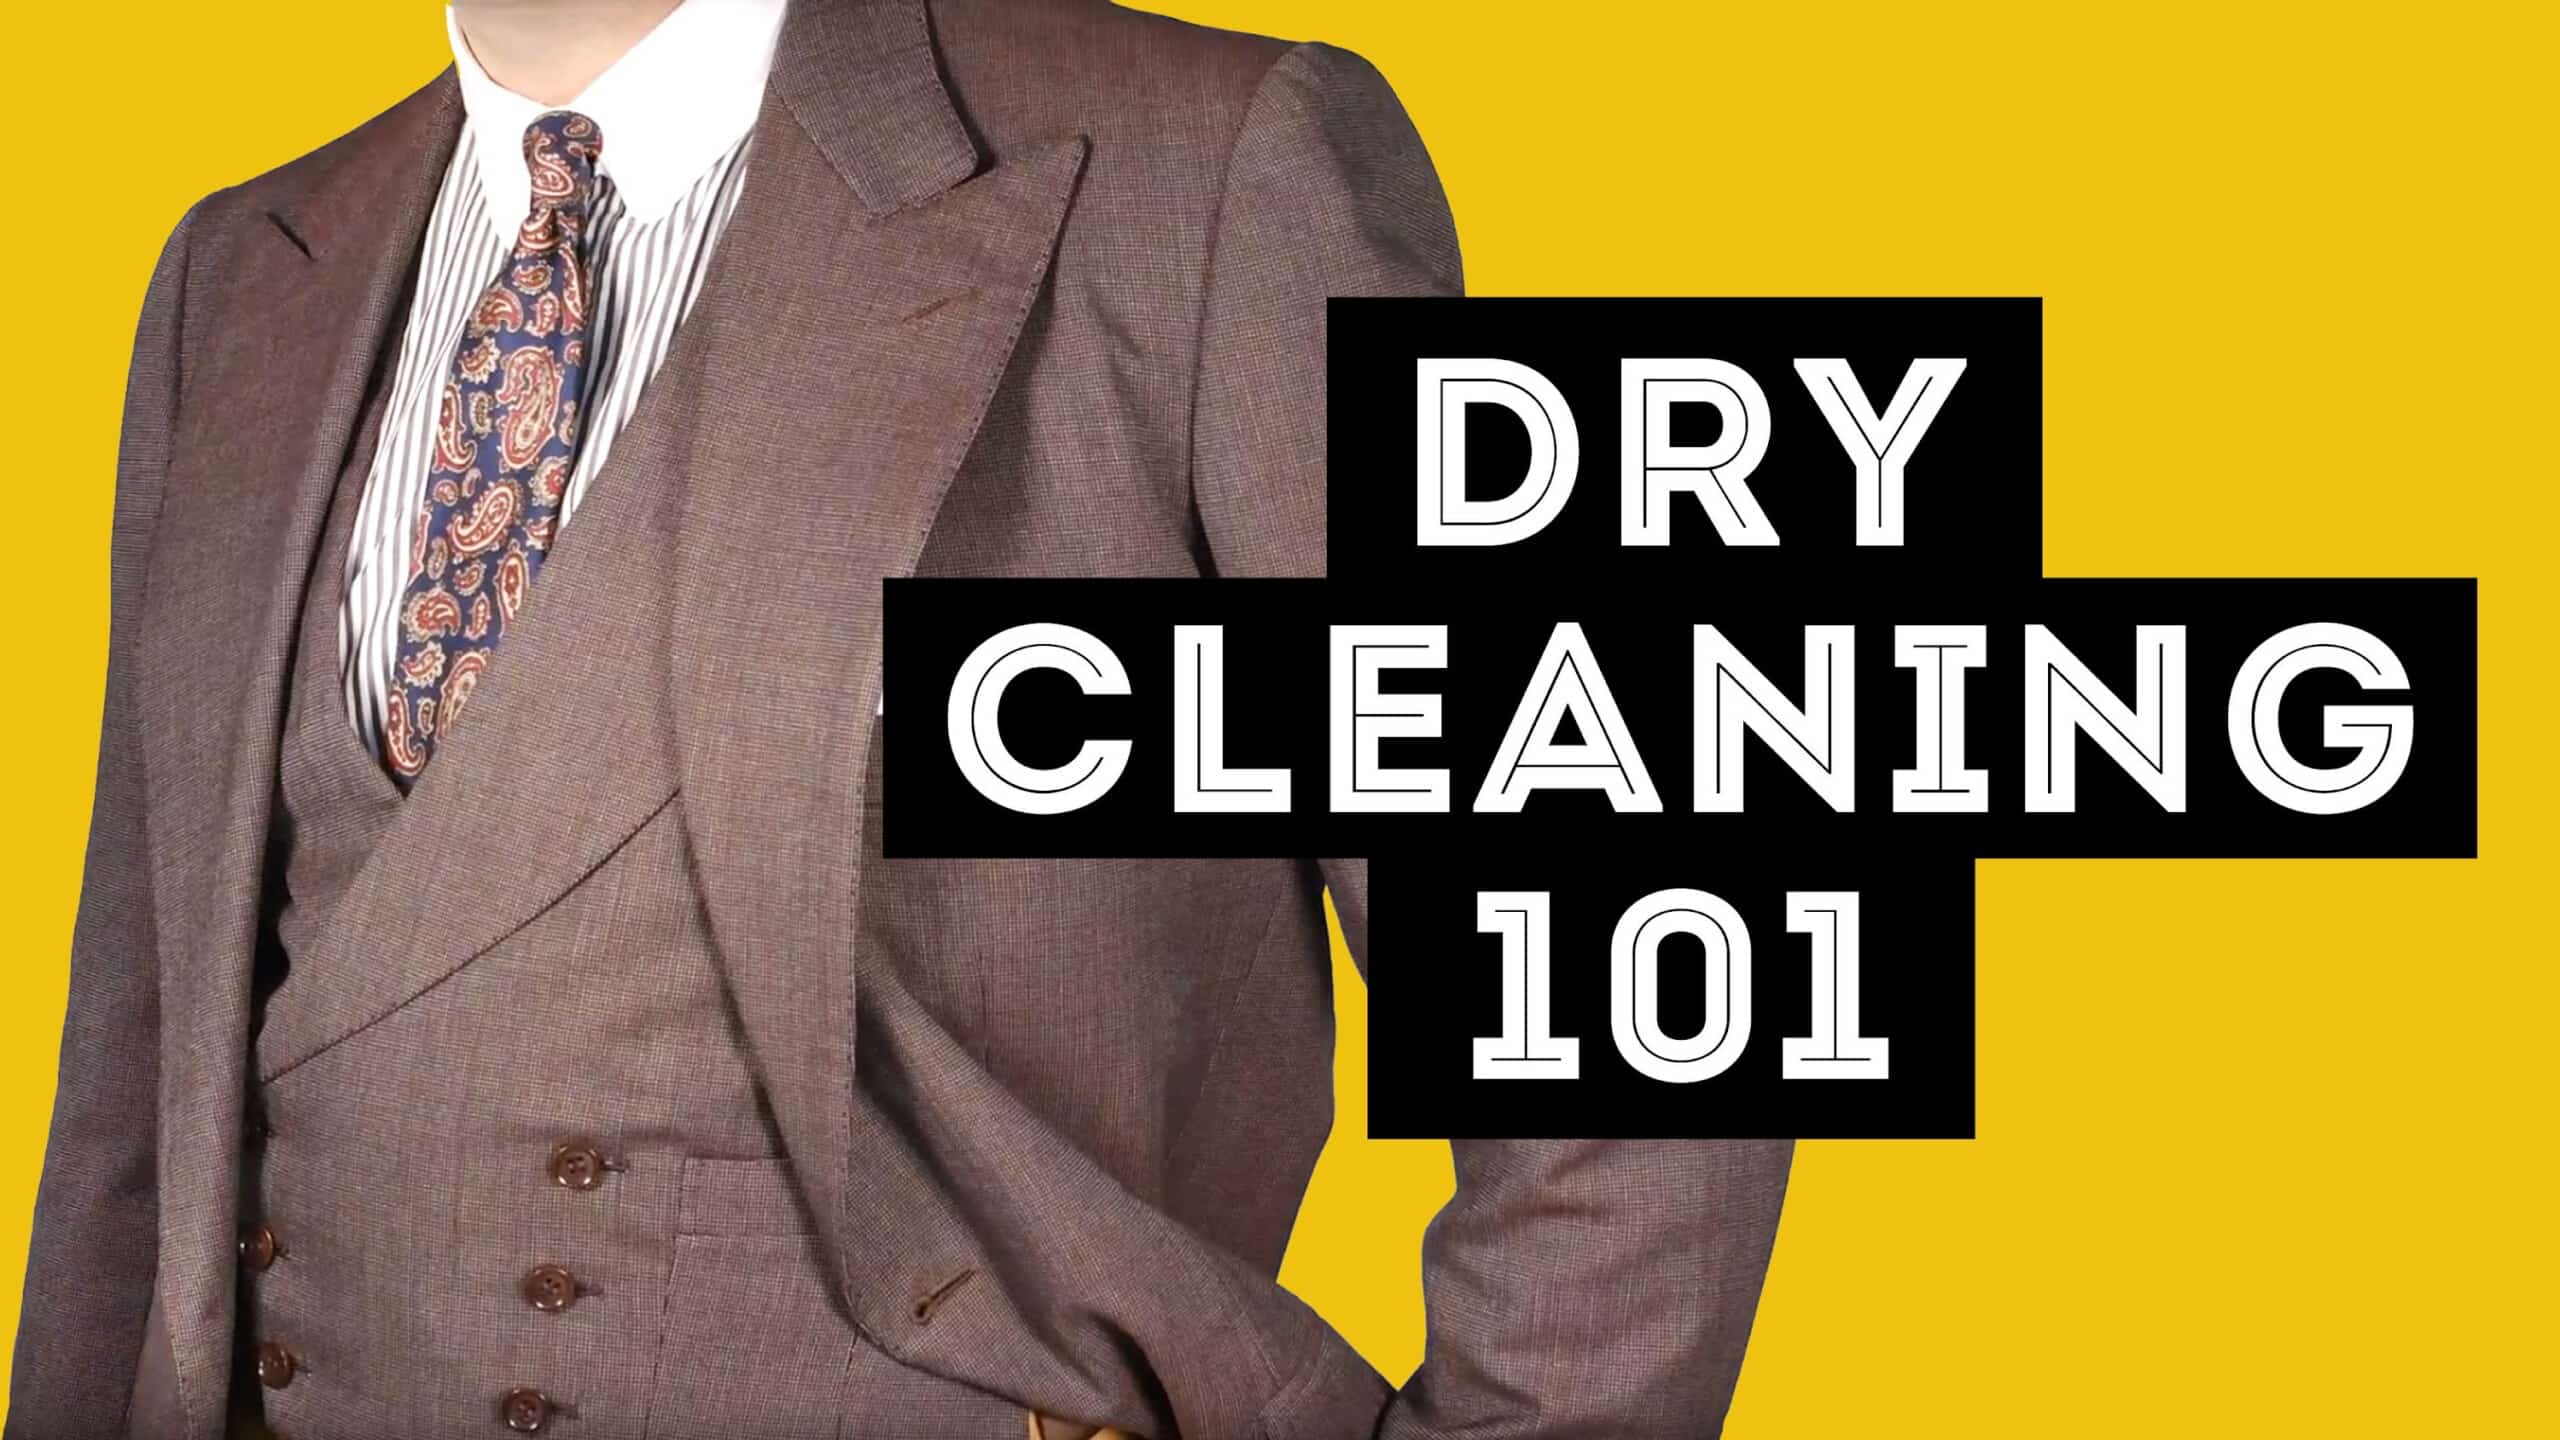 In-Home Dry Cleaning In-Home Dry Cleaning - Shop Fresheners at